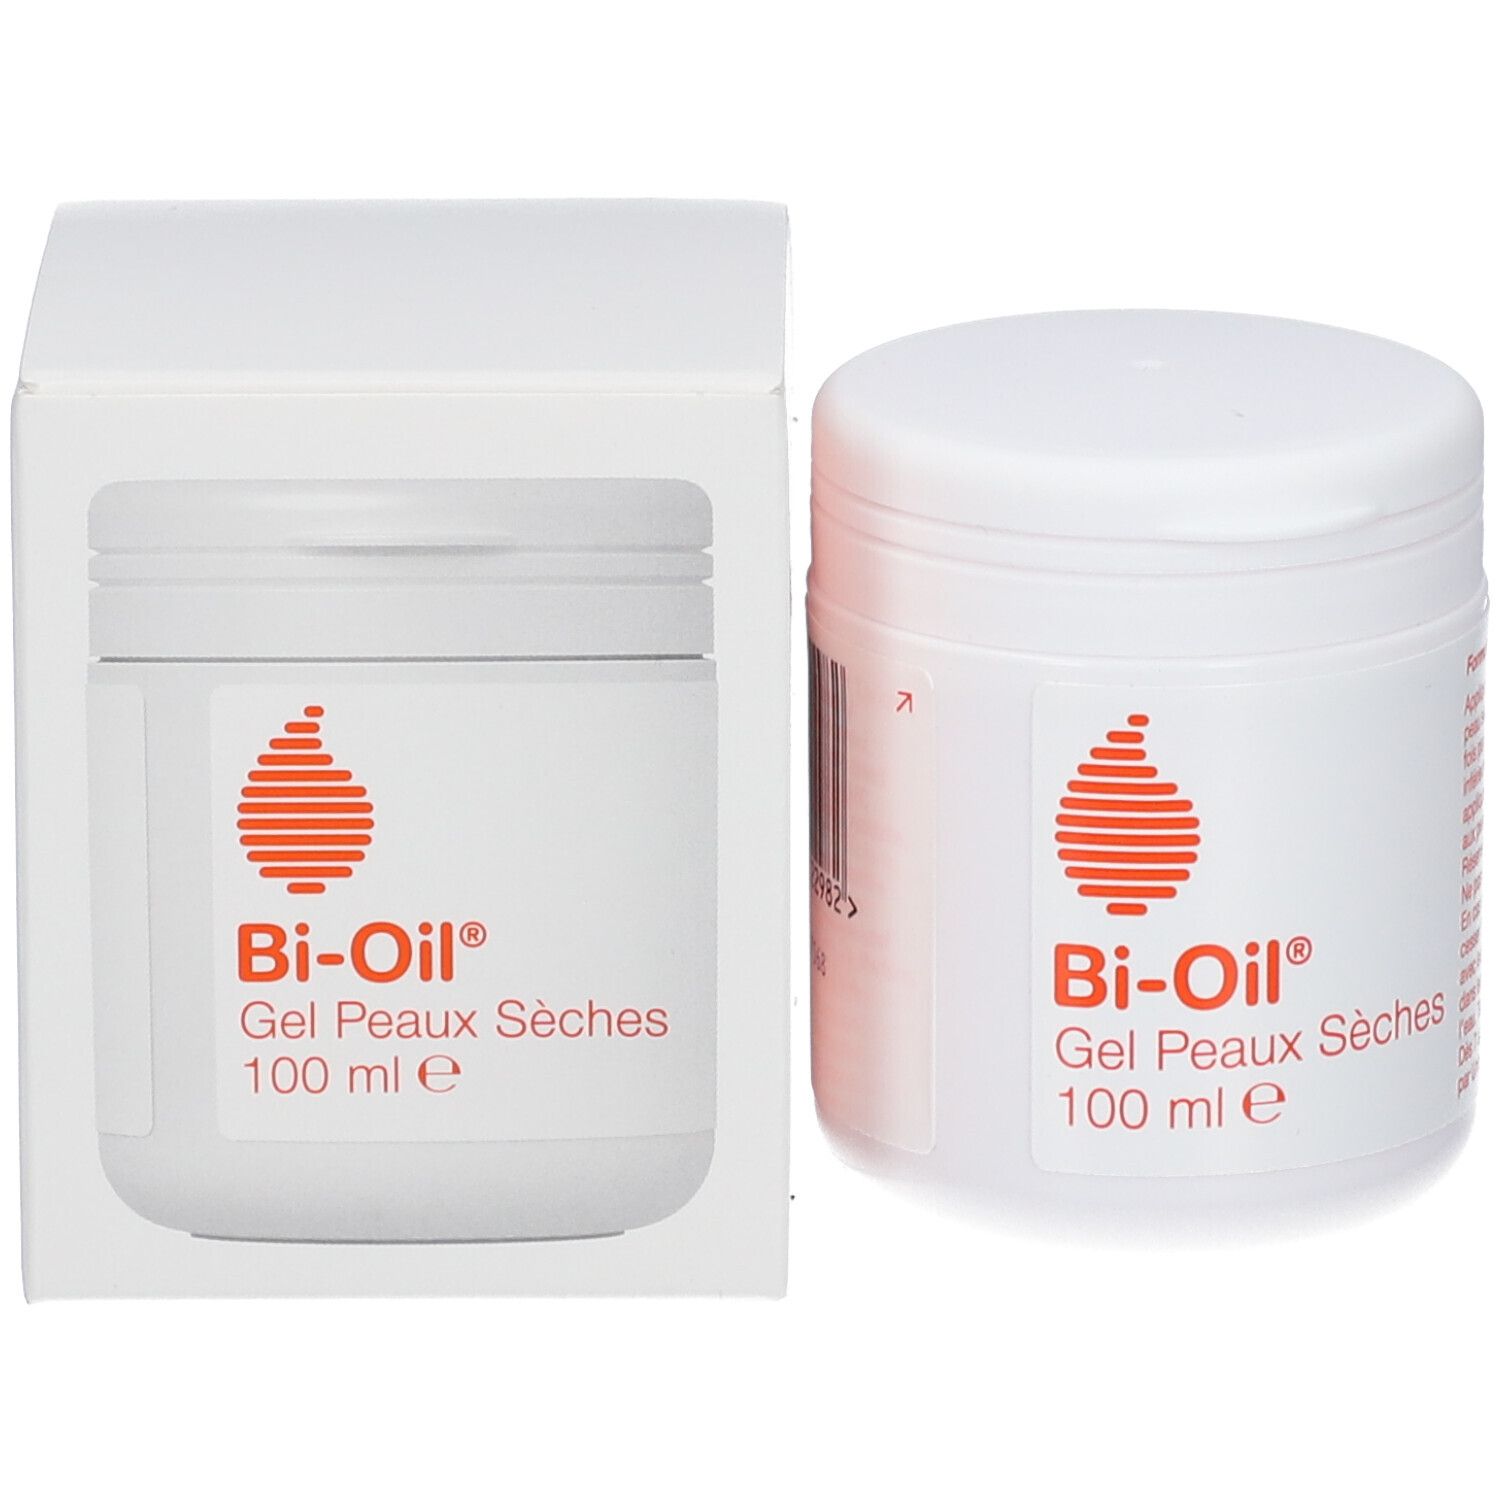 Bi-Oil Gel Peaux Sèches - Gel Hydratant Nourrissant - Non-Comédogène - 100 ml